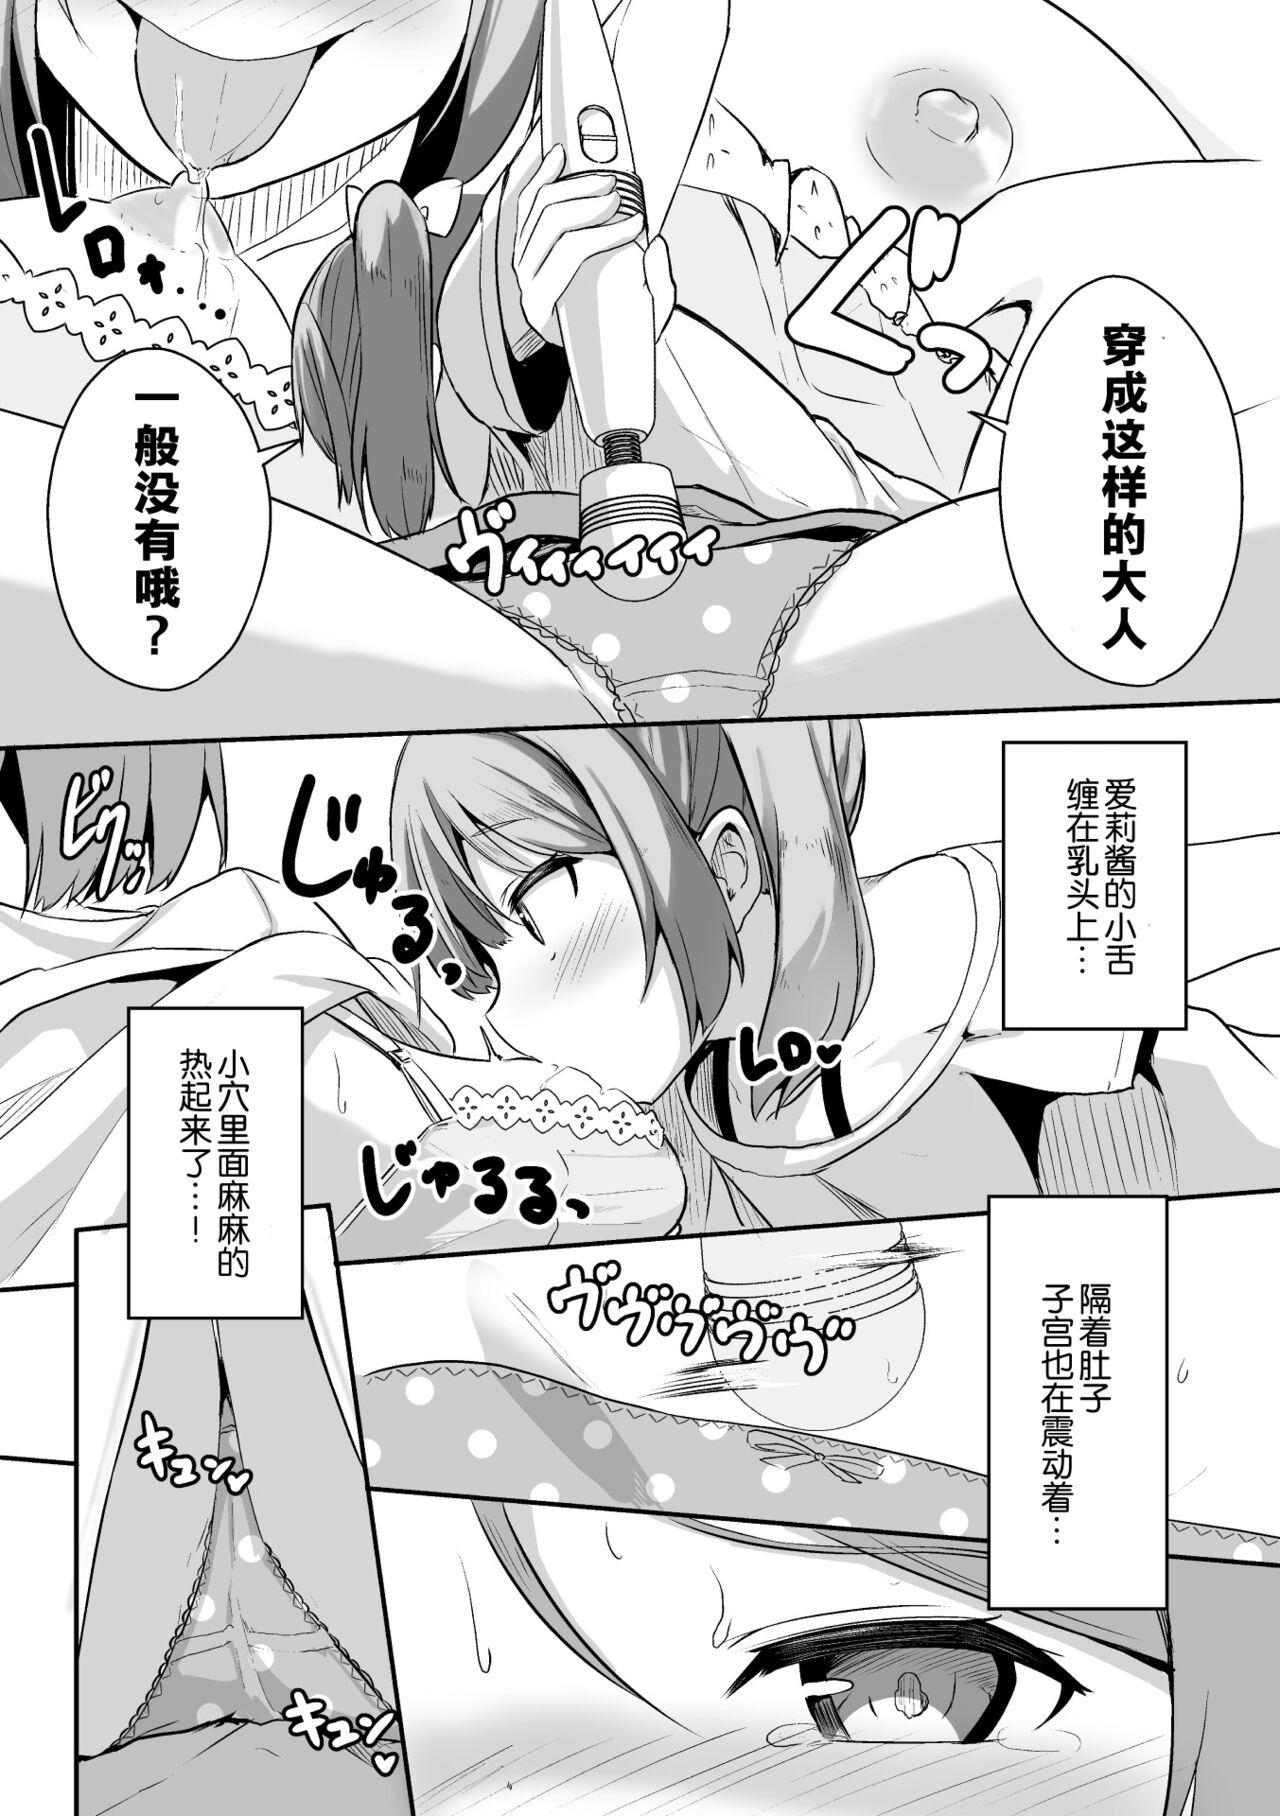 2D Comic Magazine Mesugaki vs Yasashii Onee-san Vol. 2 38